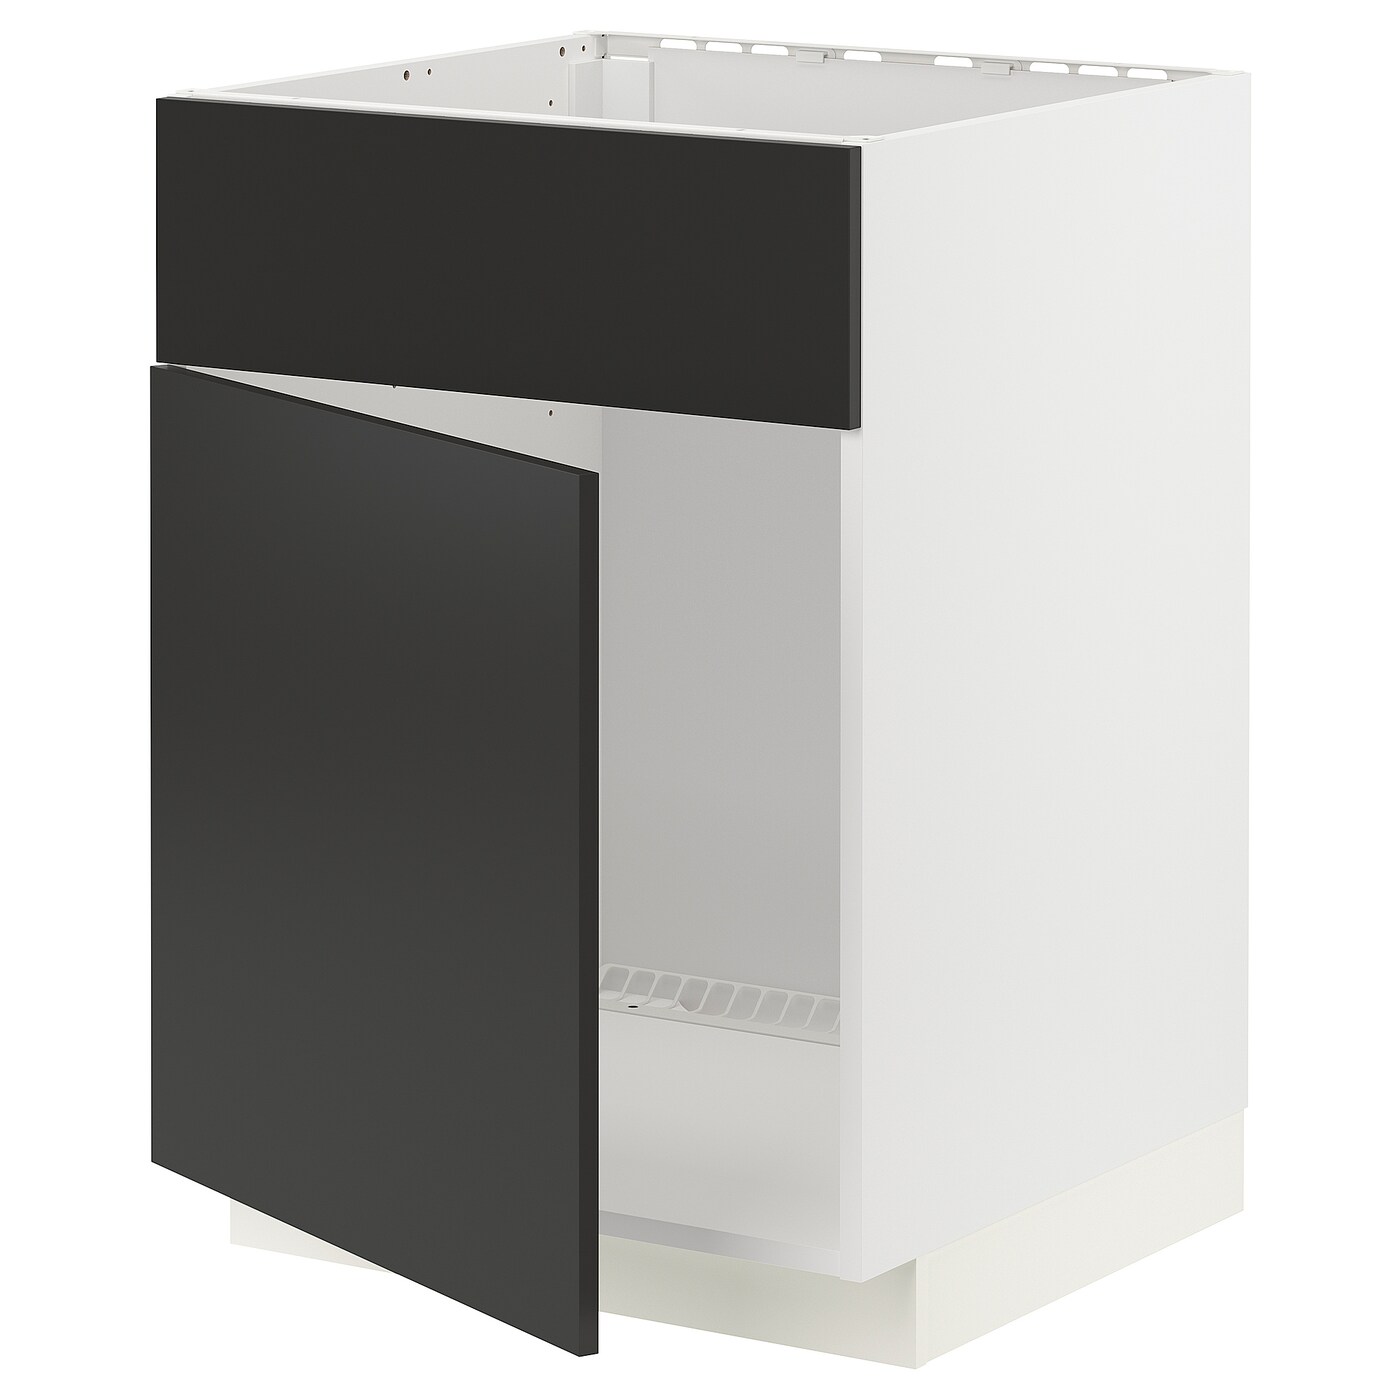 Напольный шкаф  - IKEA METOD, 88x62x60см, белый/черный, МЕТОД ИКЕА